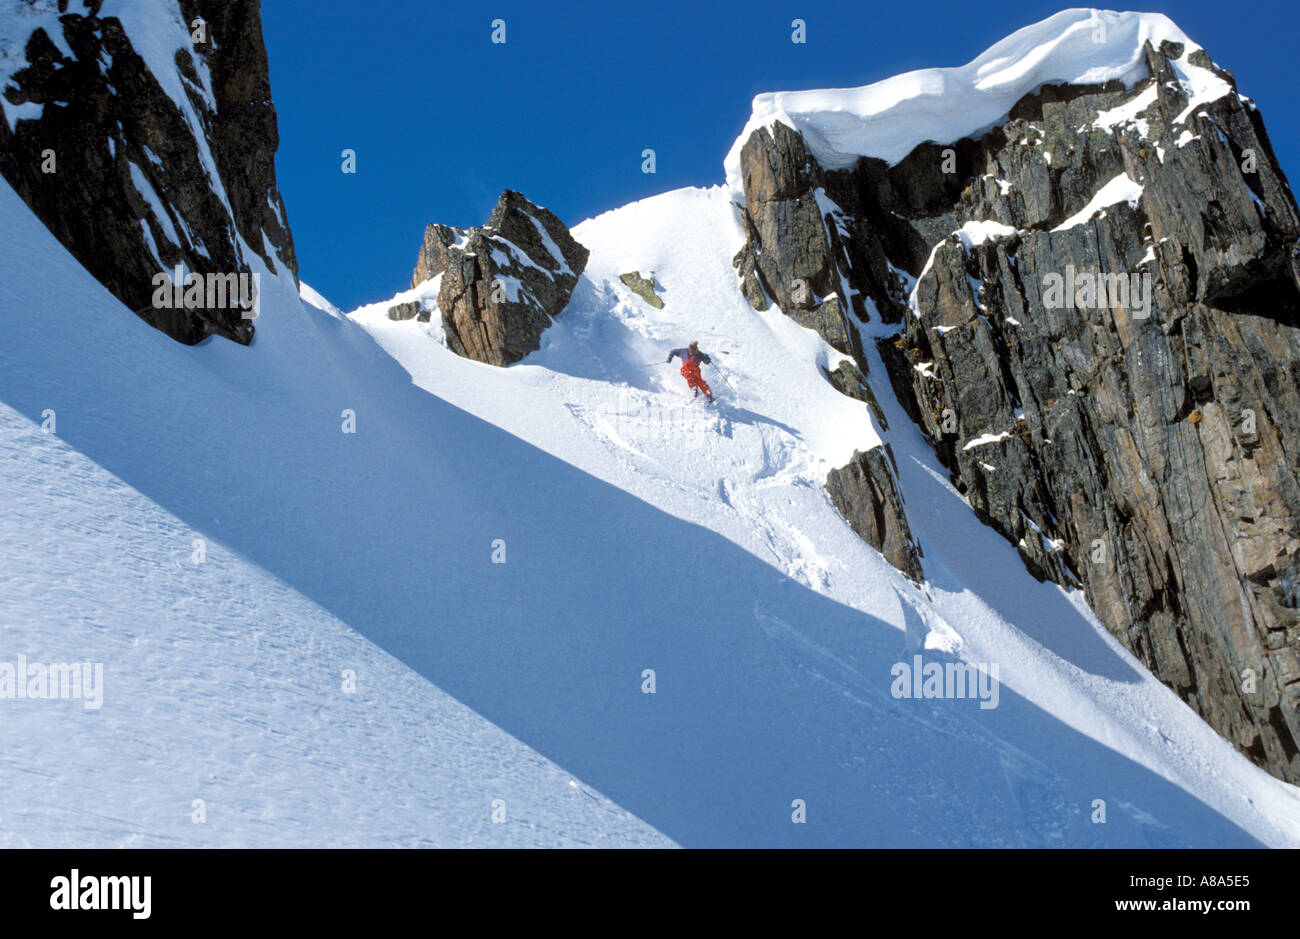 Extreme skier off piste  Stock Photo